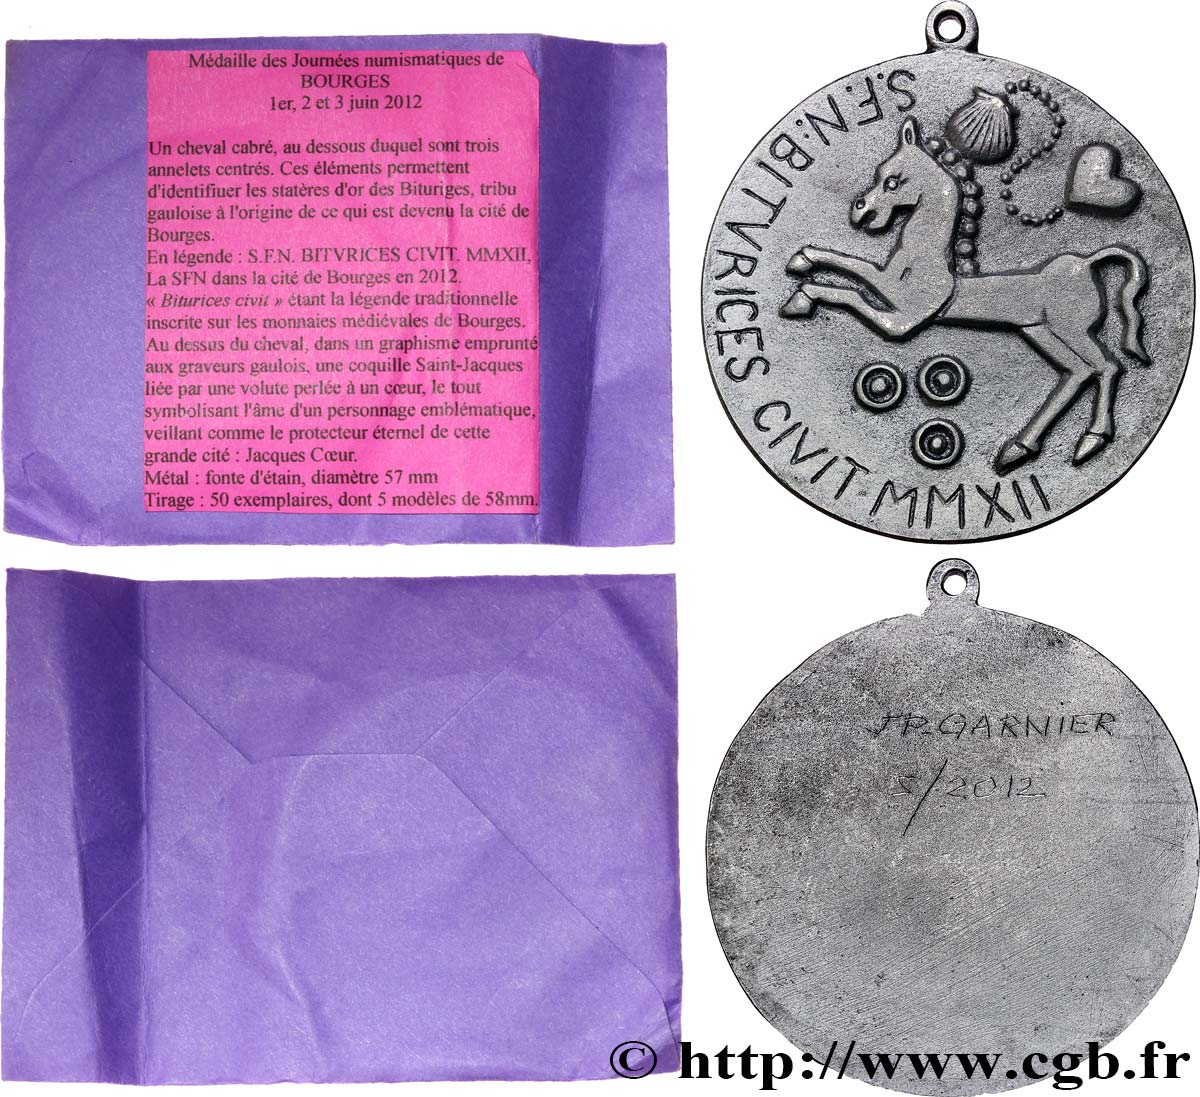 V REPUBLIC Médaille, Journées numismatiques de Bourges, SFN AU